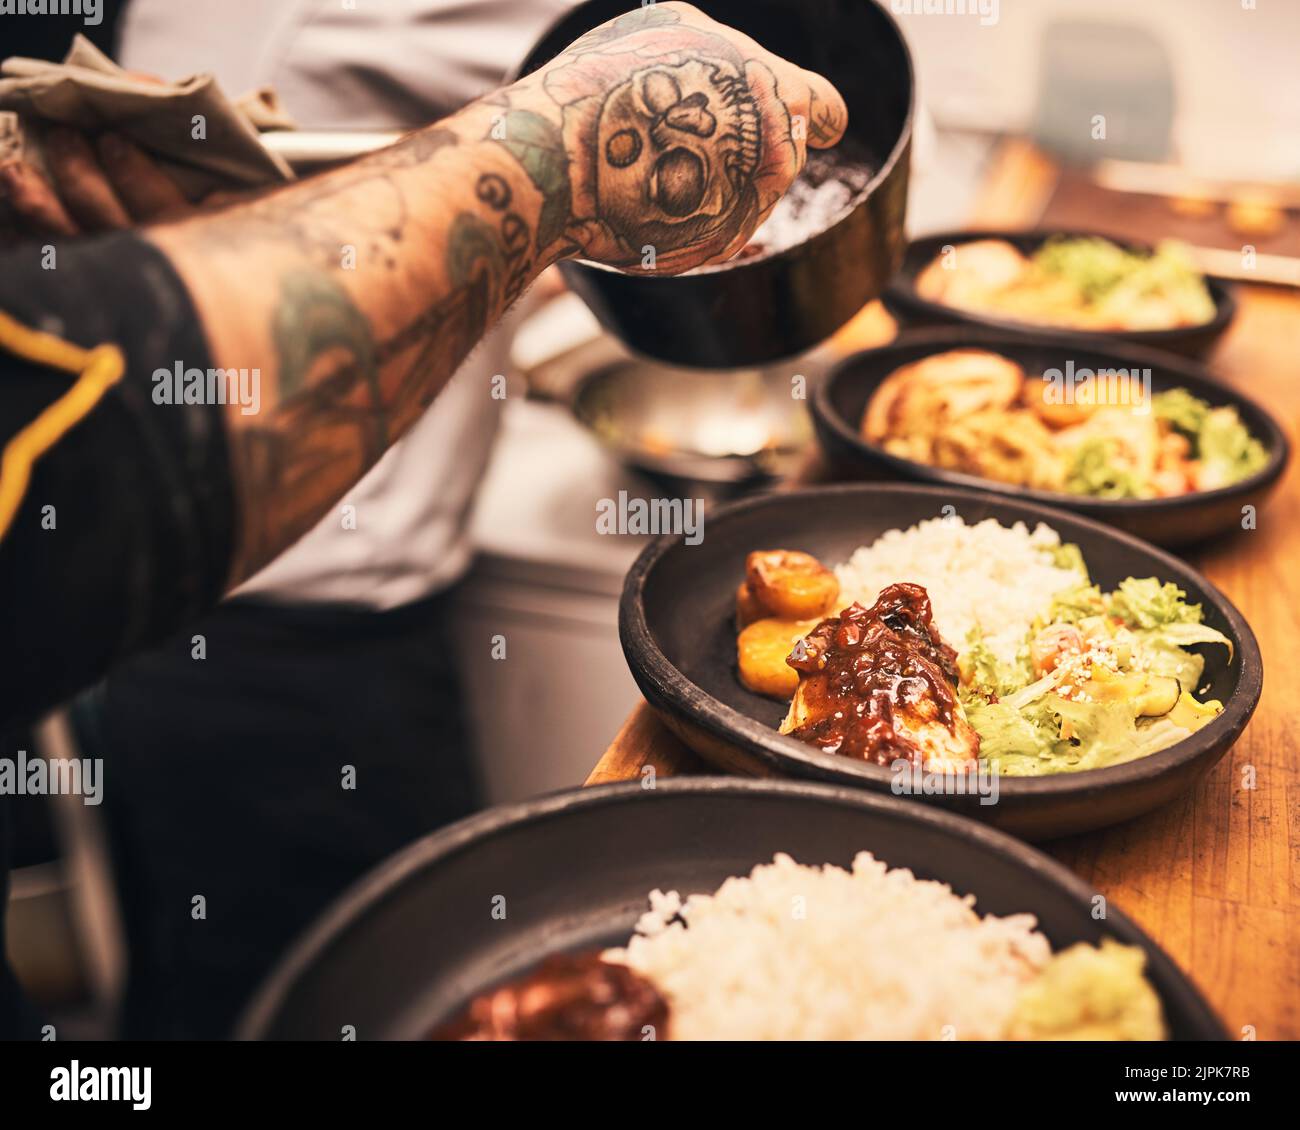 Les touches de finition. Gros plan d'un chef méconnu tatoué les mains servant la nourriture dans des assiettes à l'intérieur d'une cuisine d'un restaurant. Banque D'Images